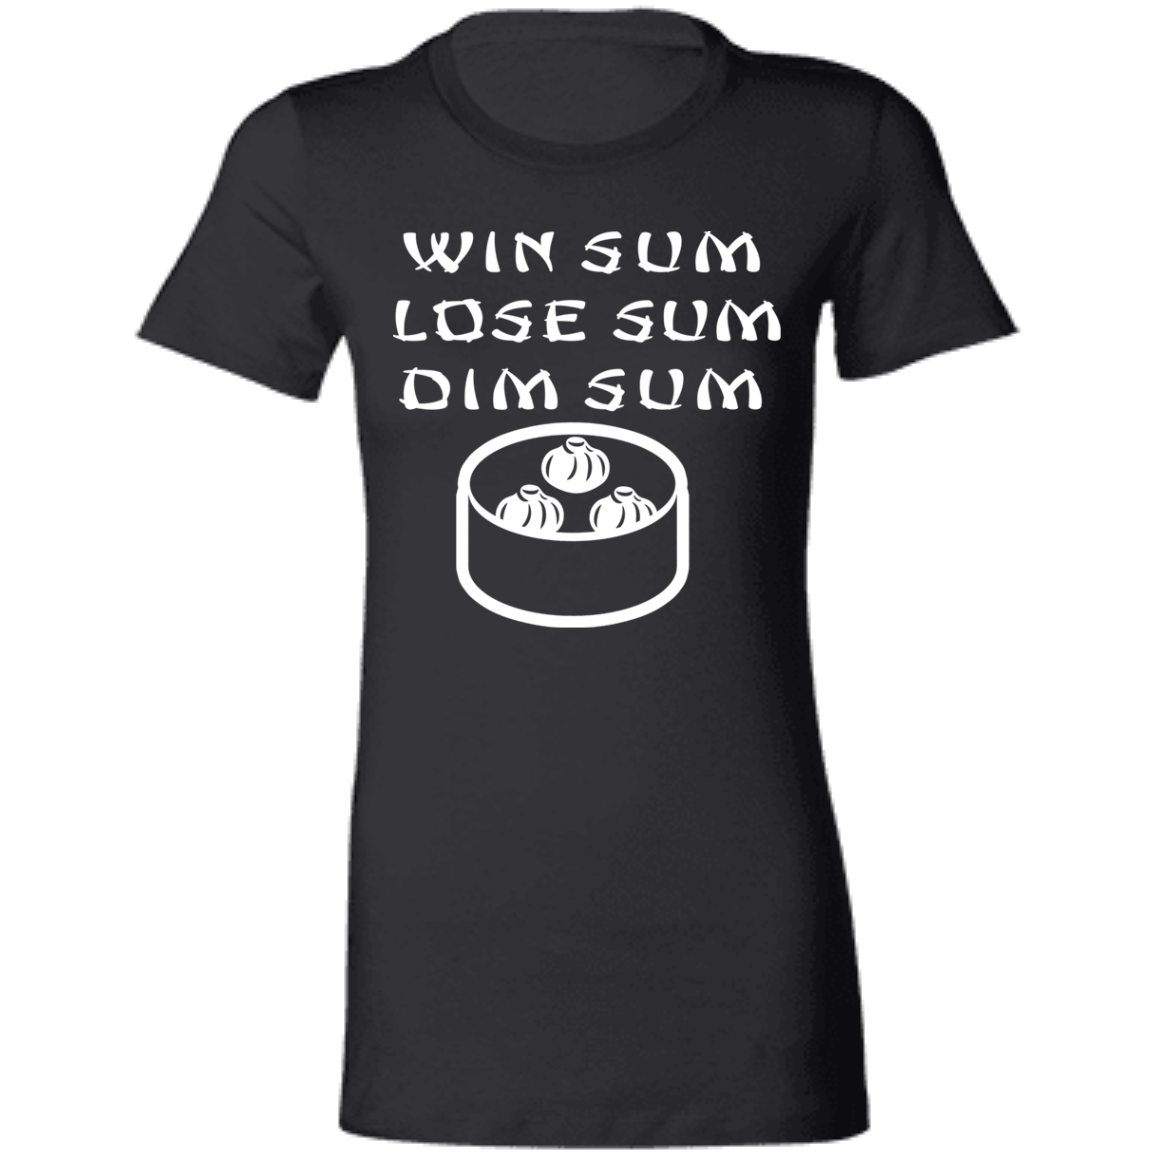 ArtichokeUSA Custom Design. Win Sum Lose Some. Dim Sum. Ladies' Favorite T-Shirt